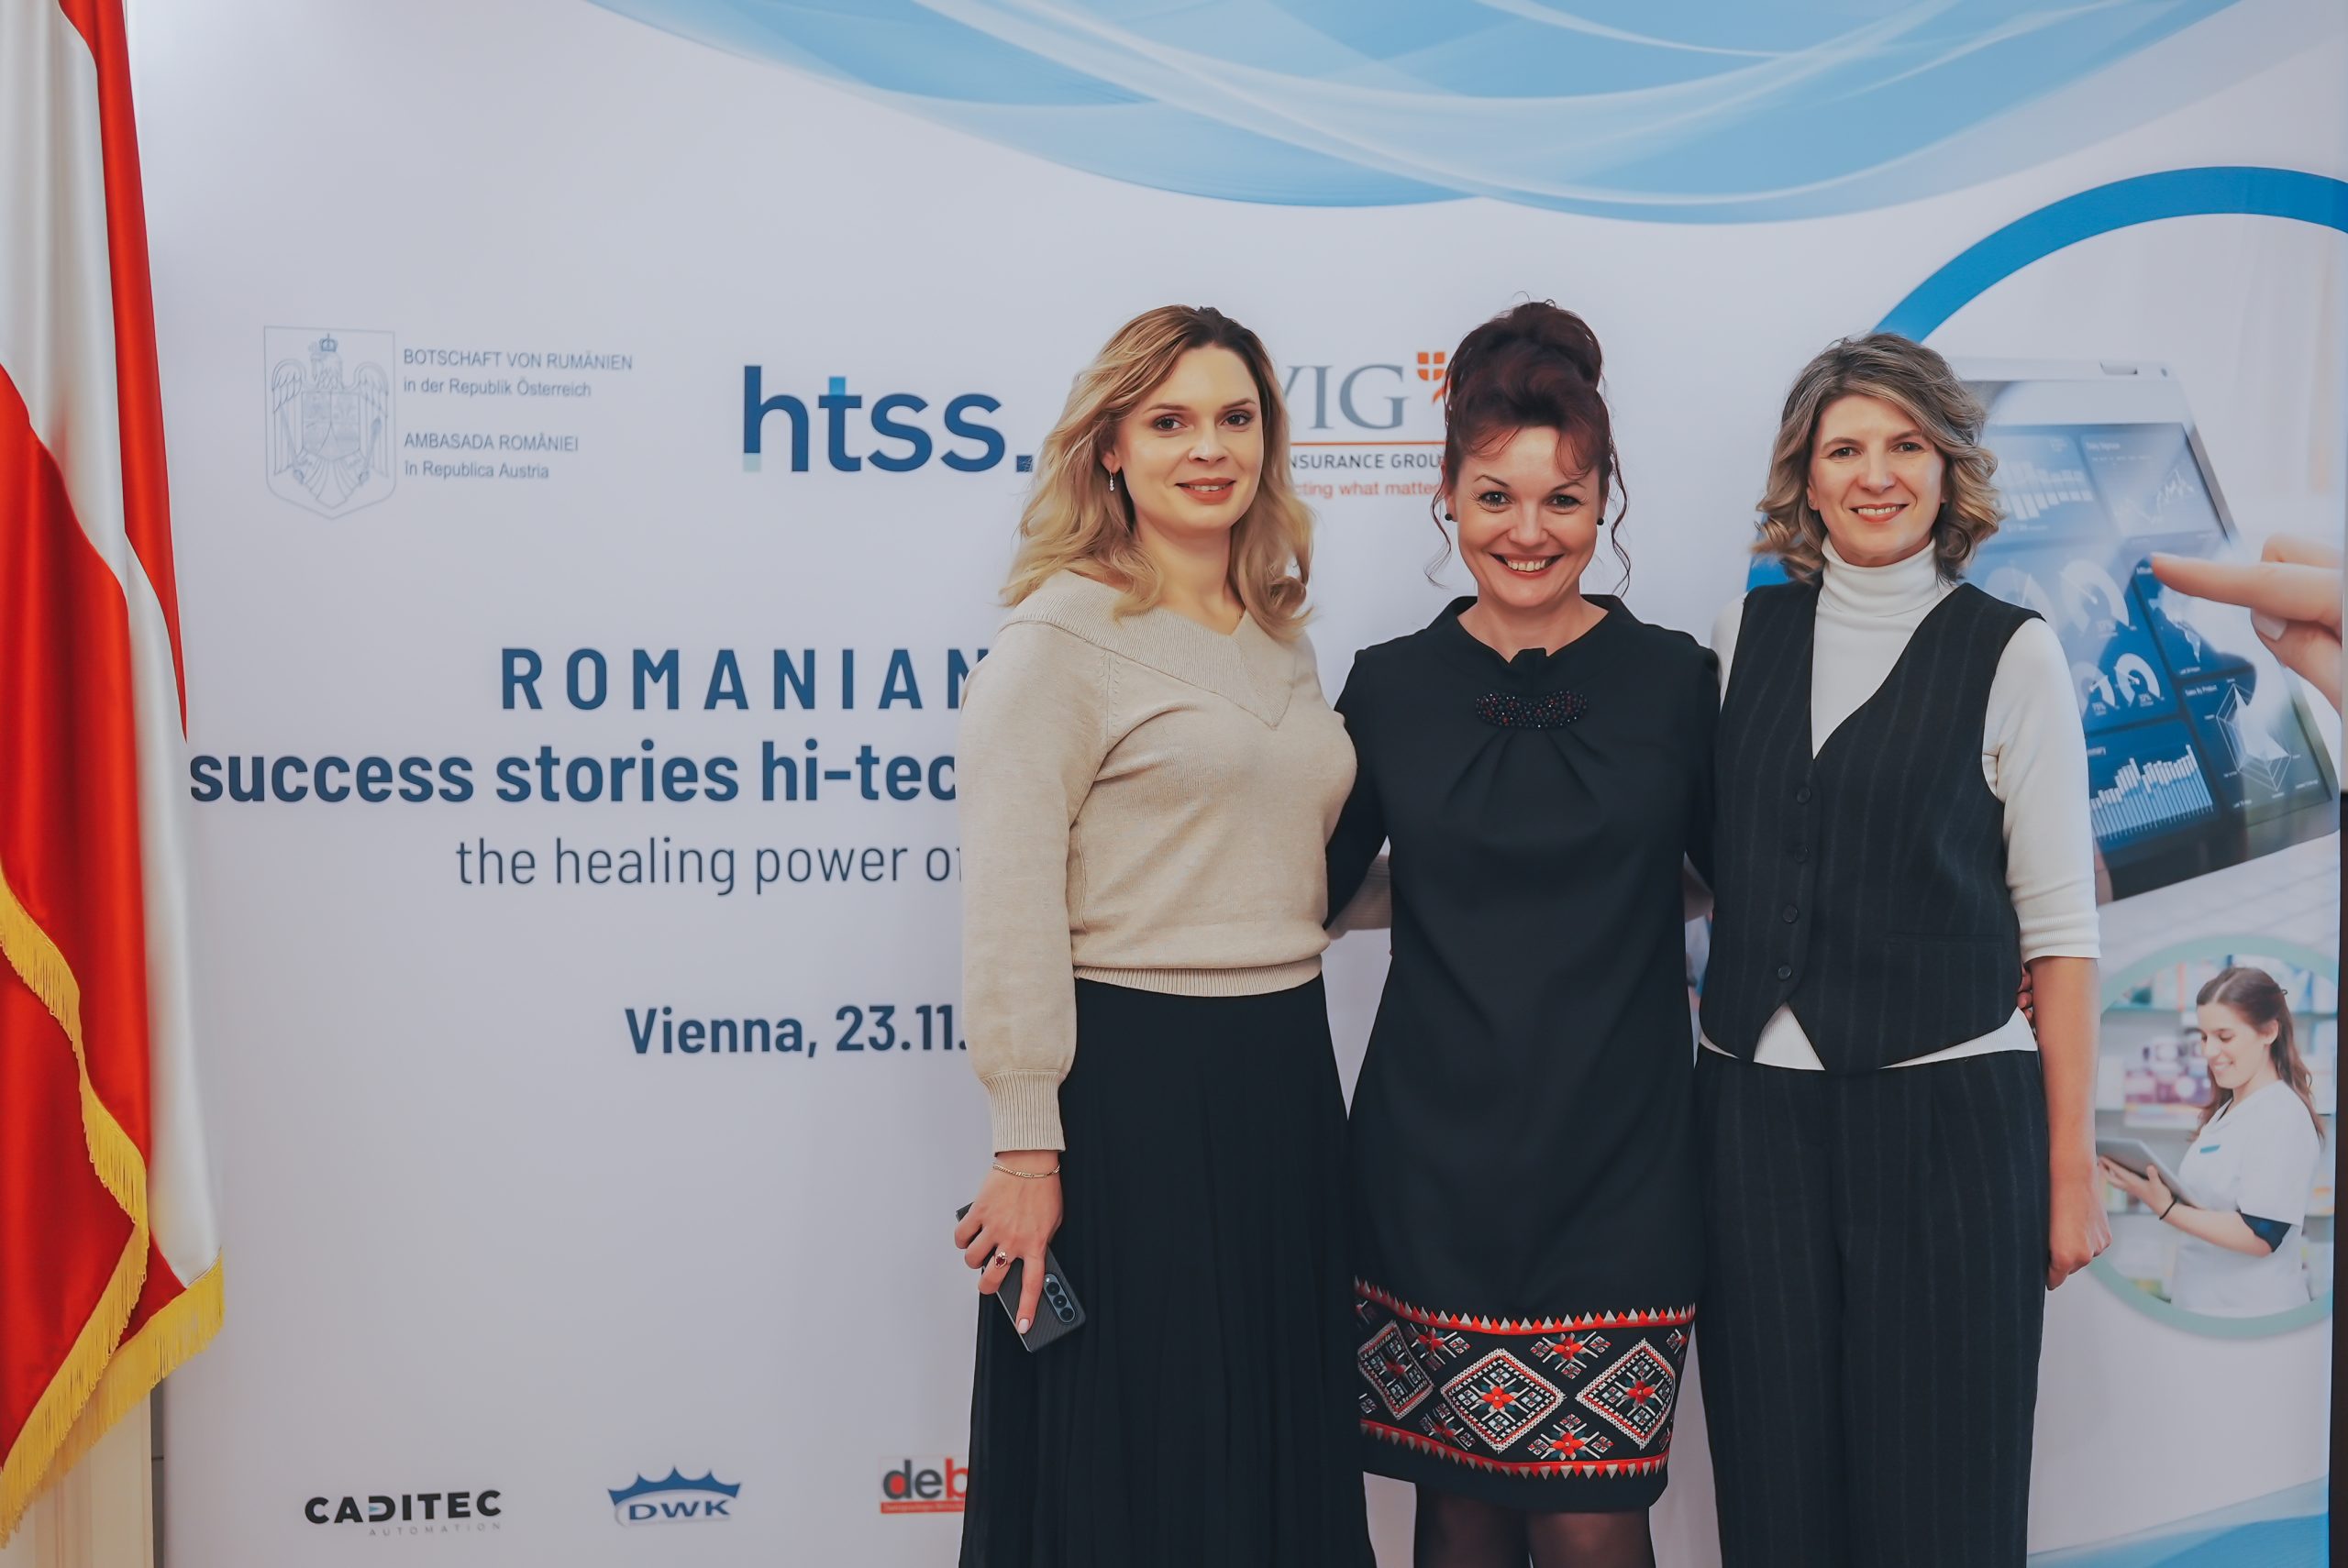 Explorarea prezentului și a viitorului: Jurnalul Inovației htss la Romanian Day în Viena